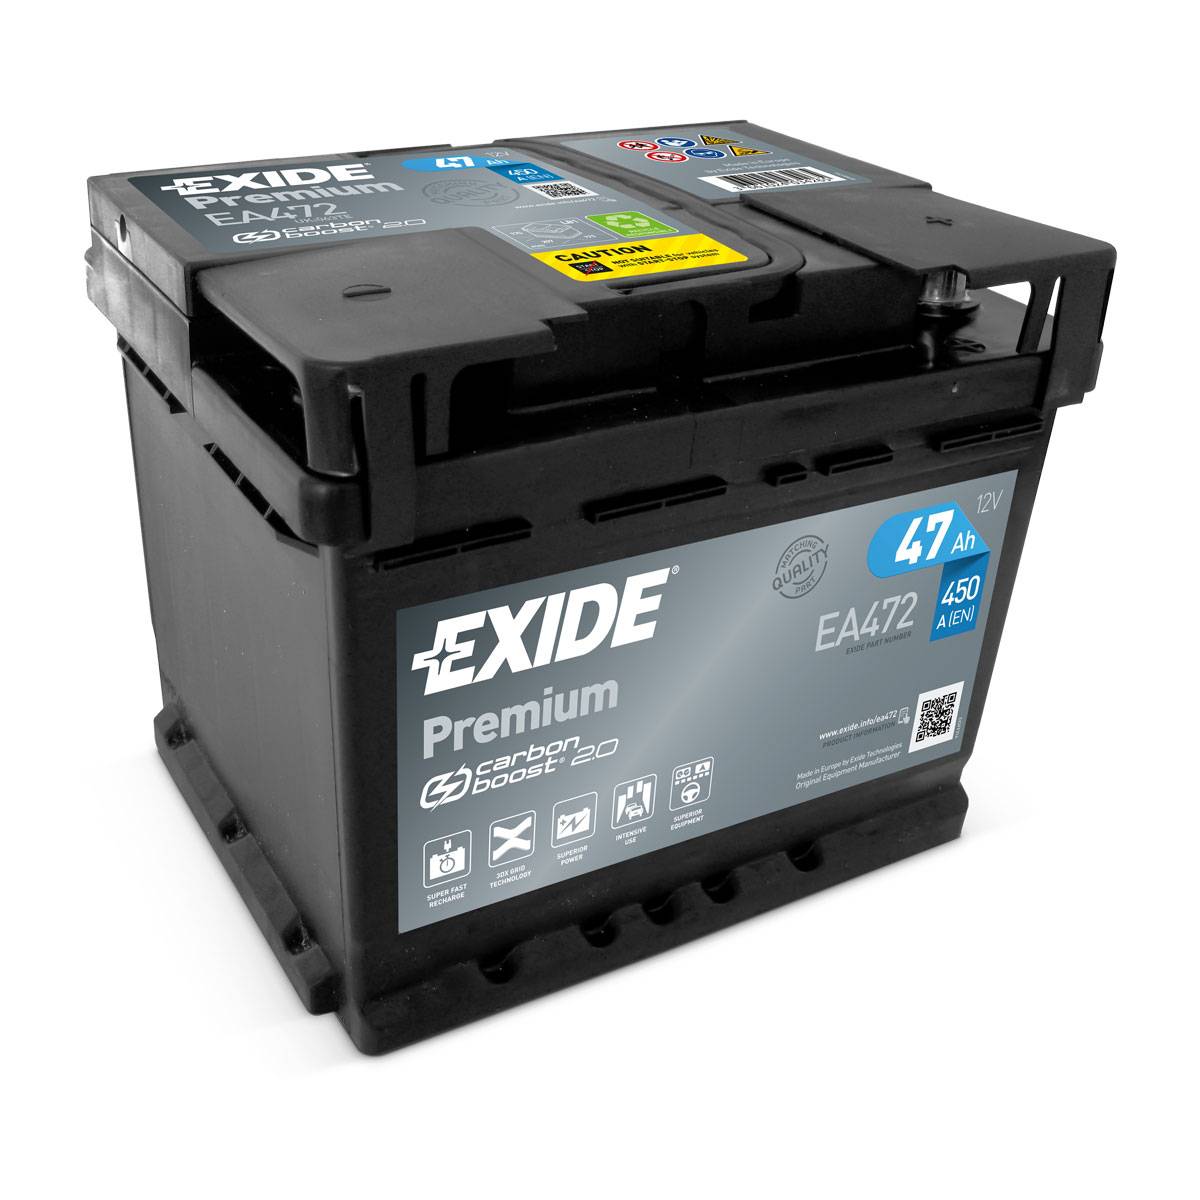 Exide EA472 Premium Carbon Boost 12V 47Ah 450A Autobatterie